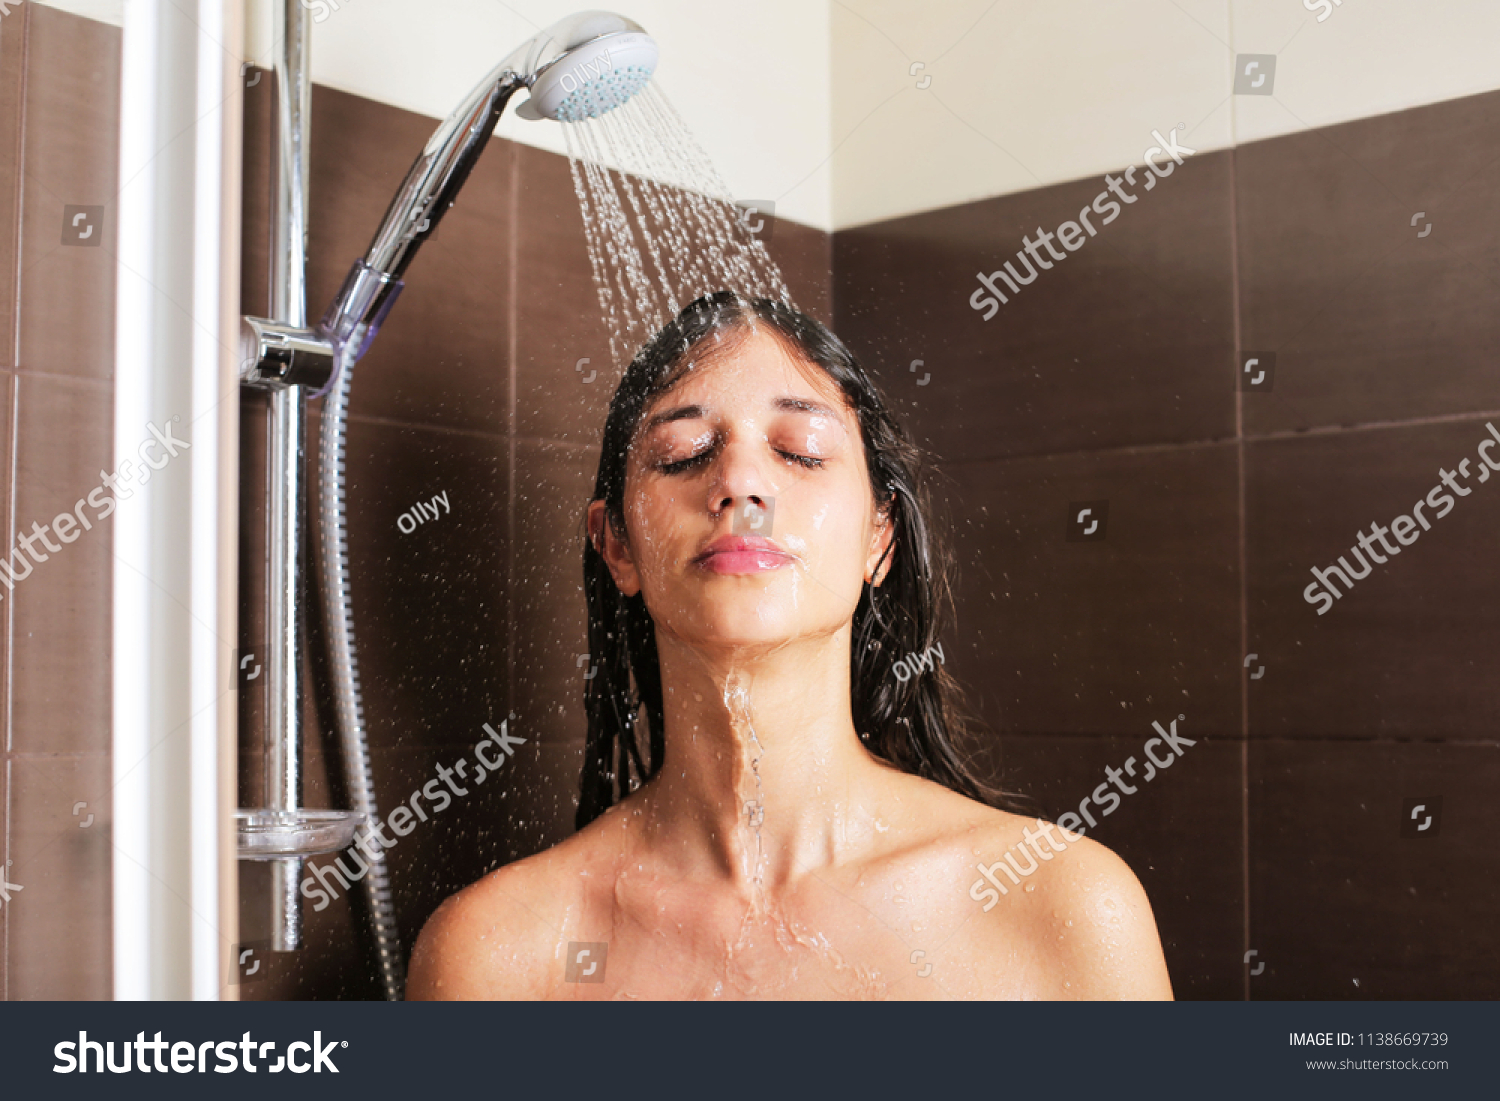 Симпатичная девушка принимает душ